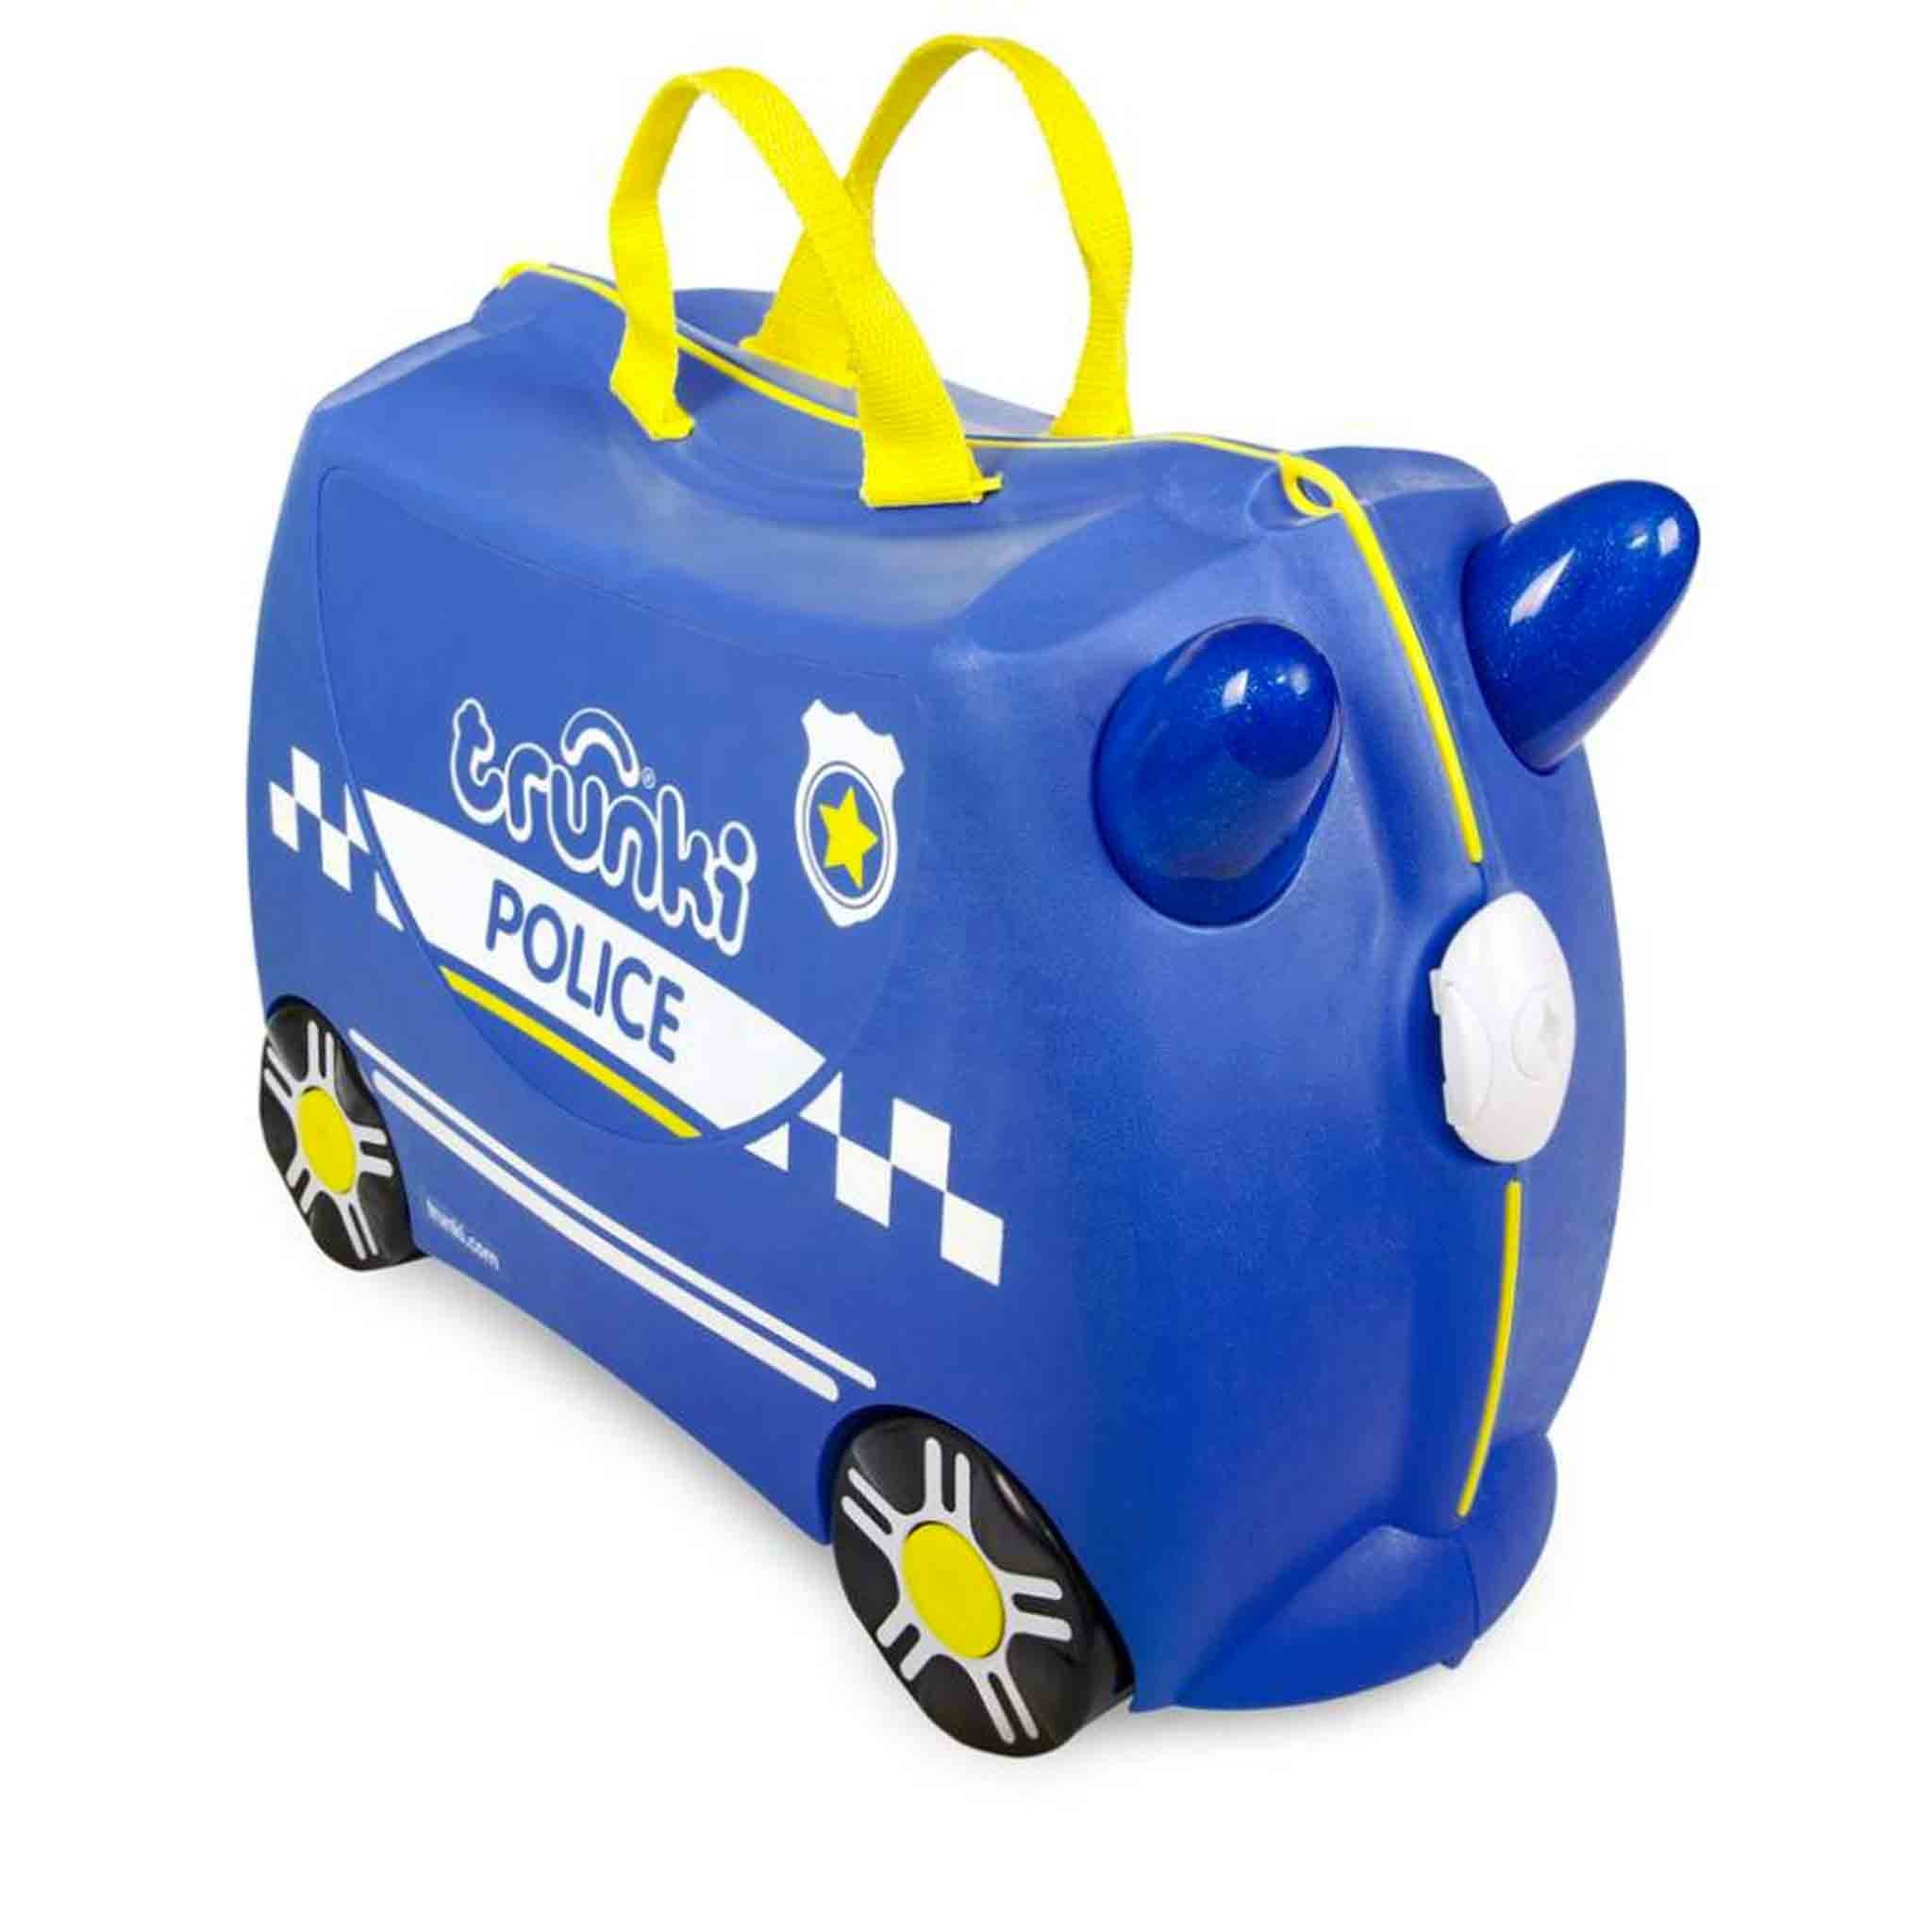 TR0323-GB-trunki-valigetta-cavalcabile-traino-bambini-viaggiare-colorata-police.jpg